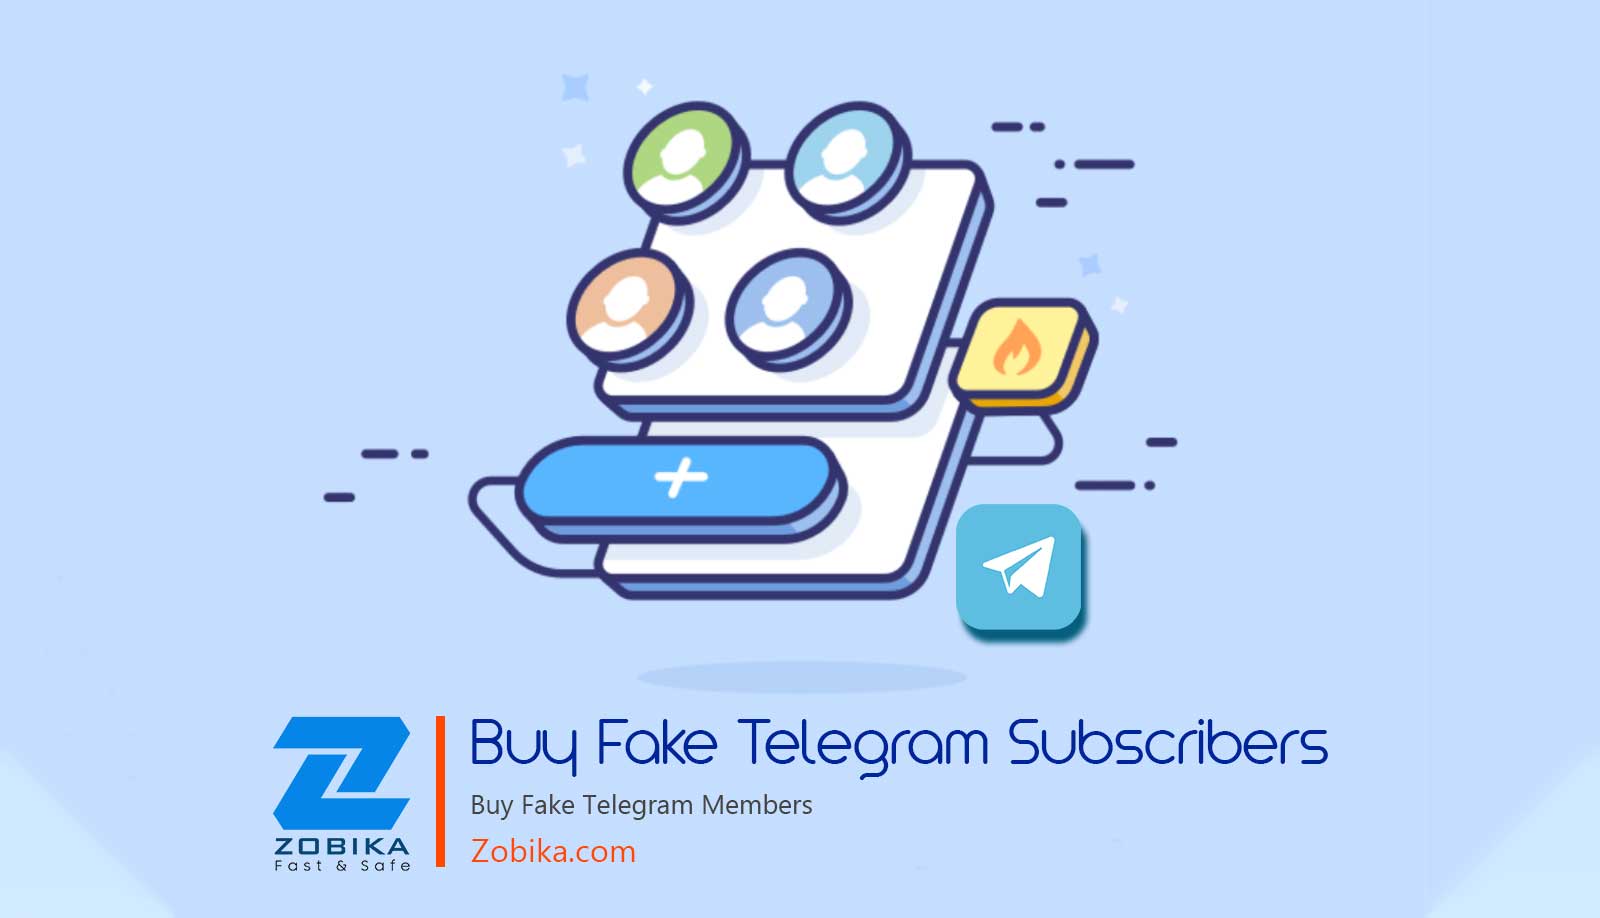 Buy Fake Telegram Subscribers | Buy Fake Telegram Members